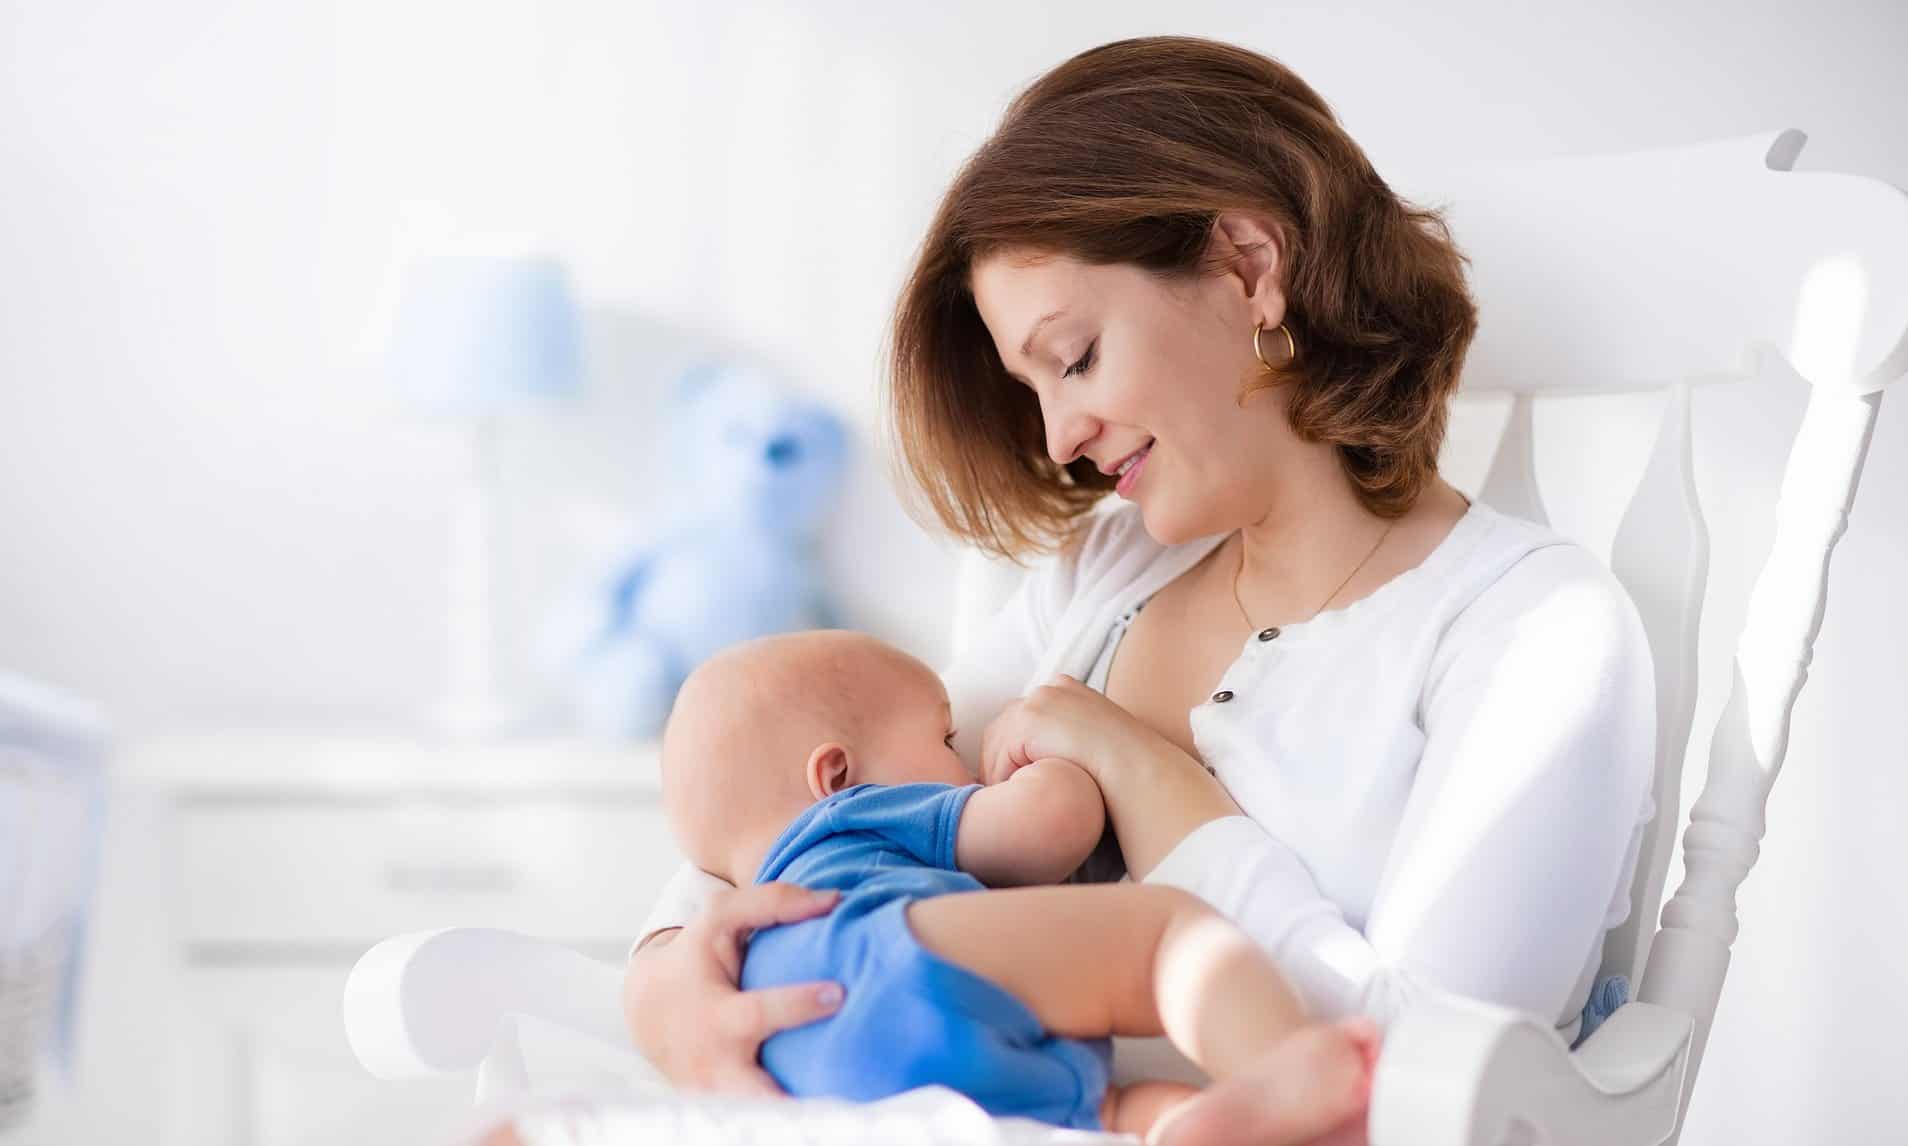 Πράγματι, αν ο ιός δεν είναι στο μητρικό γάλα, είναι δυνατόν να μολυνθεί το μωρό σας αγγίζοντάς το ή όταν βήχετε κοντά του.